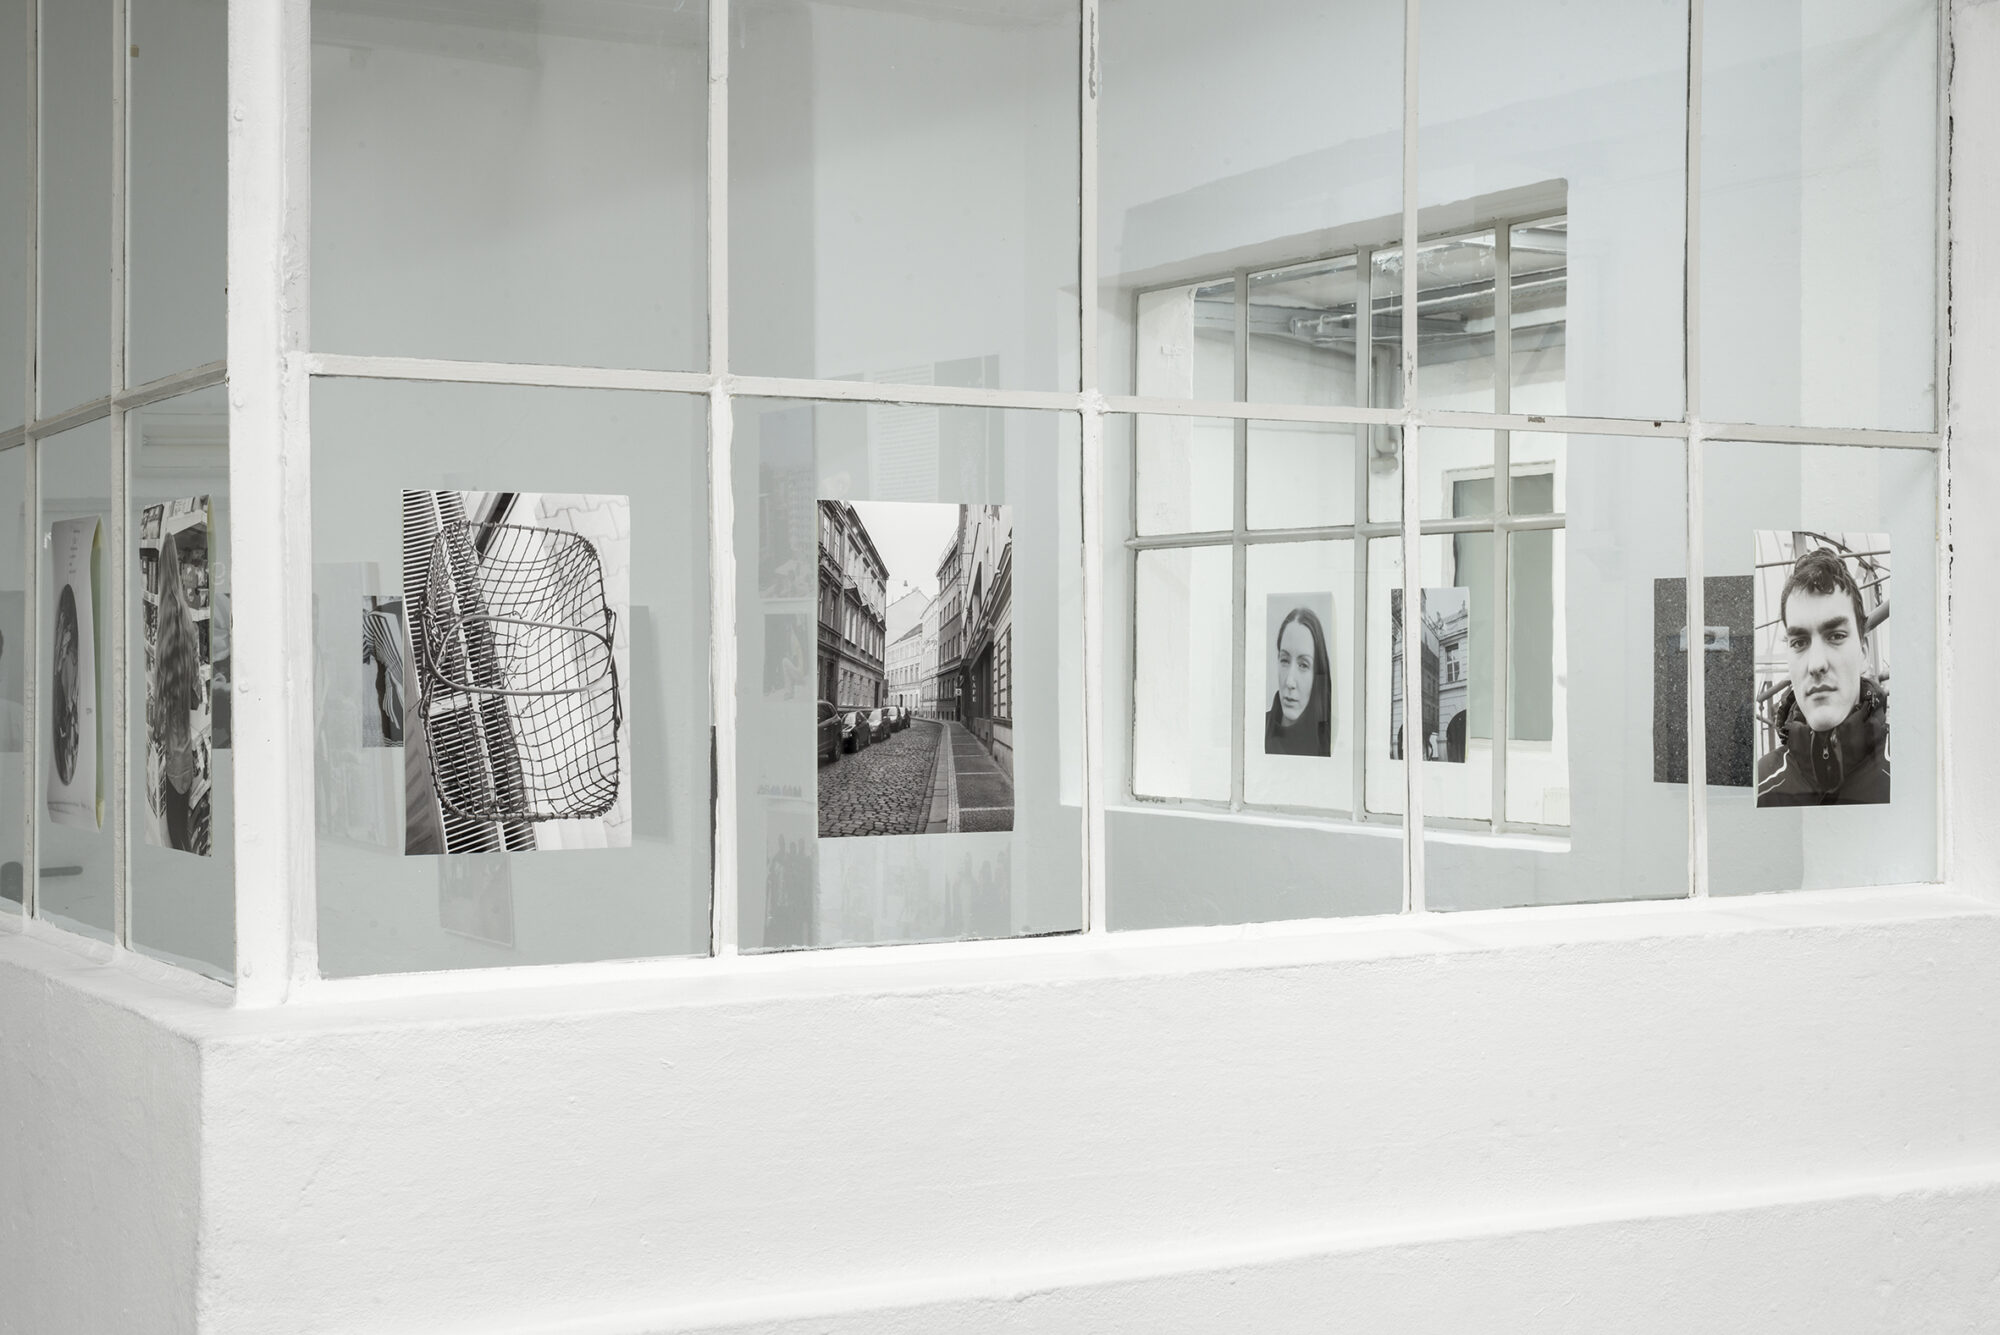 Máj/My, exhibition Vis à vis, Fotodoks, Lothringer 13, München, 2019<br />
pigment prints, 40 x 26,6 cm<br />
foto: Markus Krottendorfer